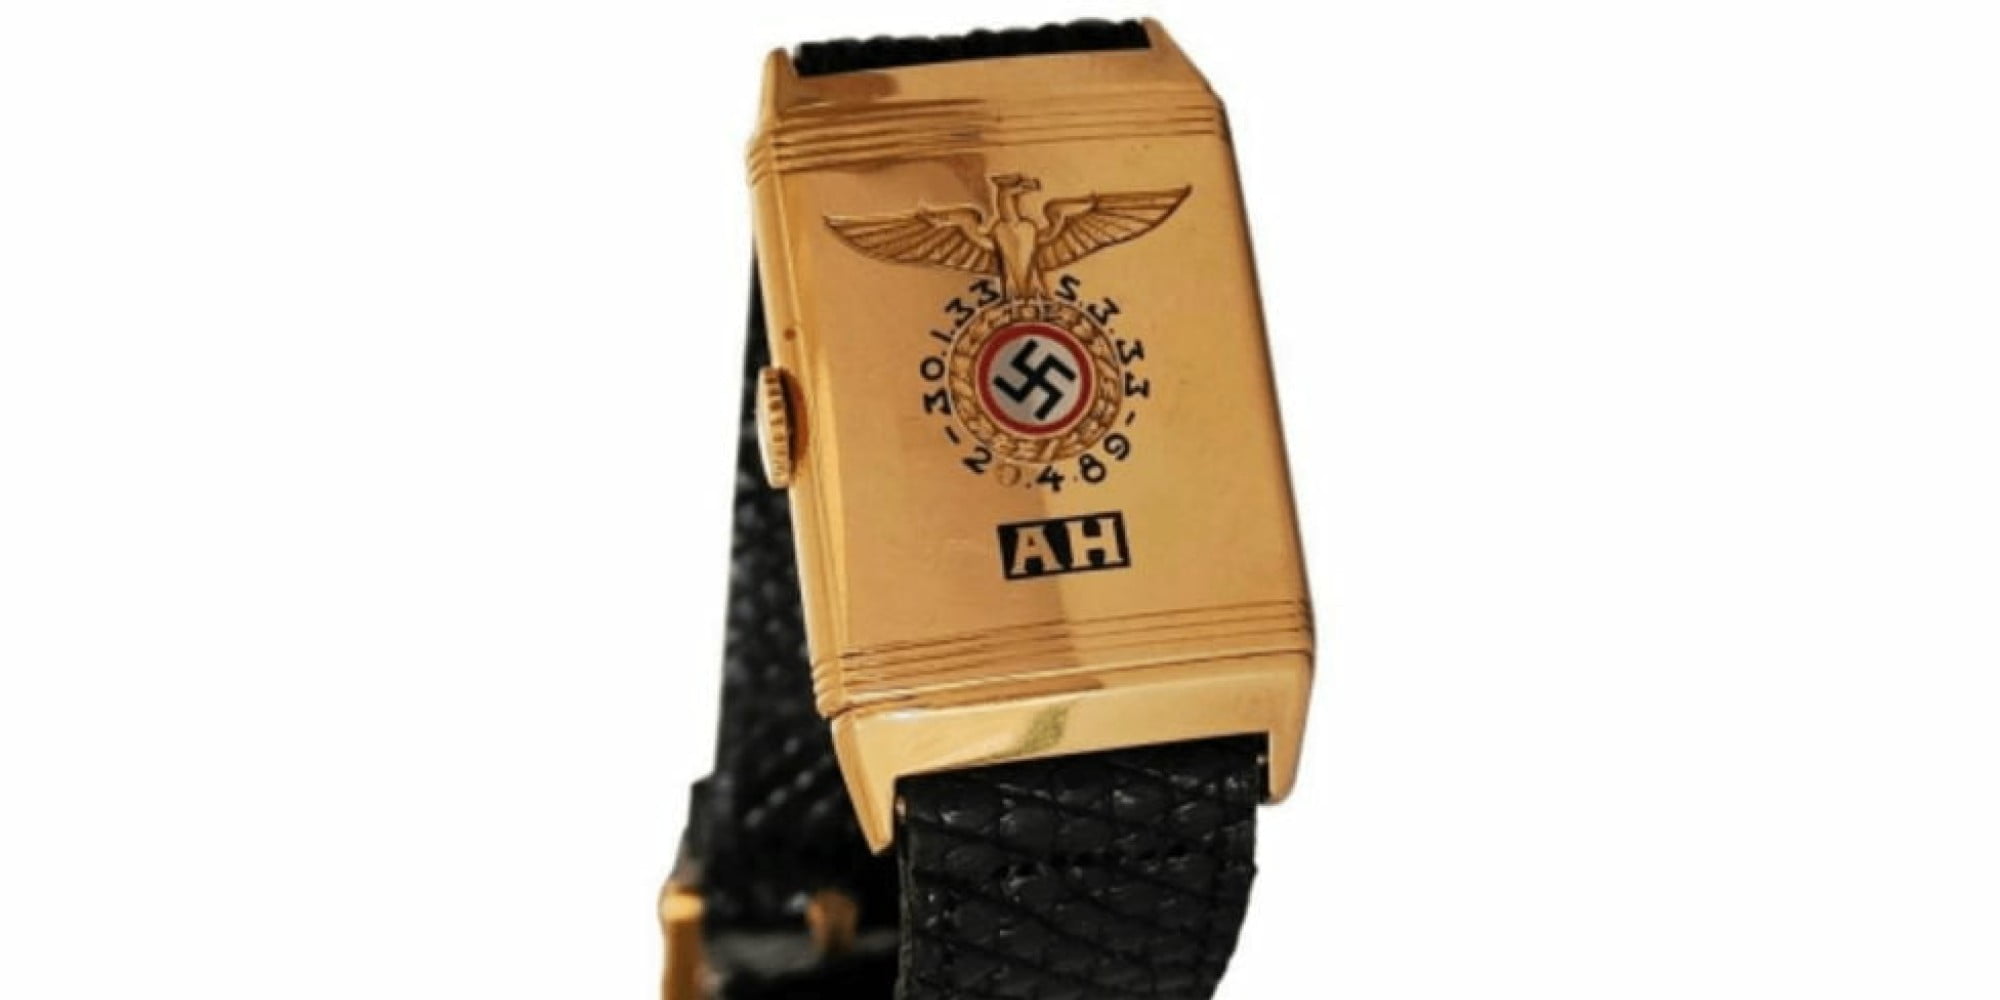 Ρολόι του Χίτλερ με χαραγμένα τα αρχικά του και σβάστικα πωλήθηκε για 1,1 εκατ. δολάρια σε δημοπρασία